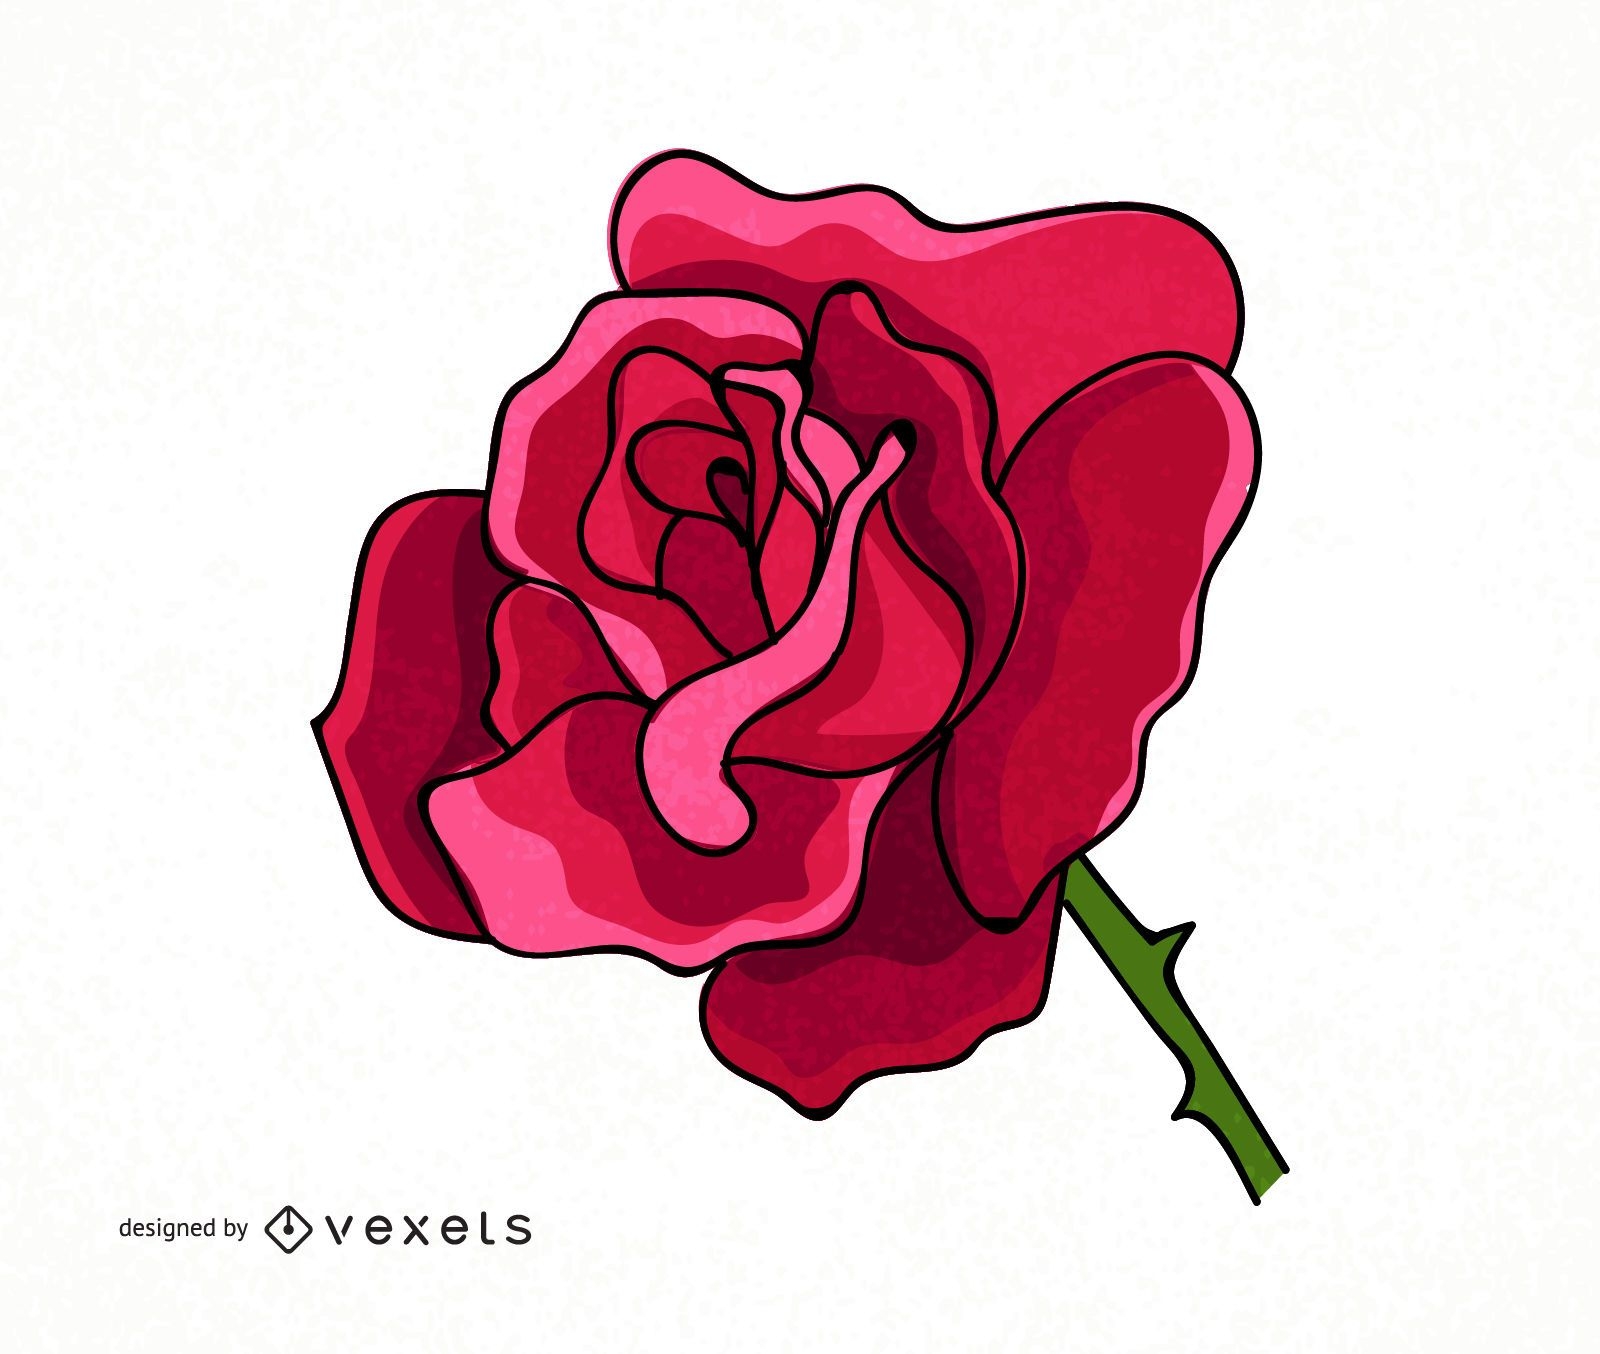 Big rose illustration